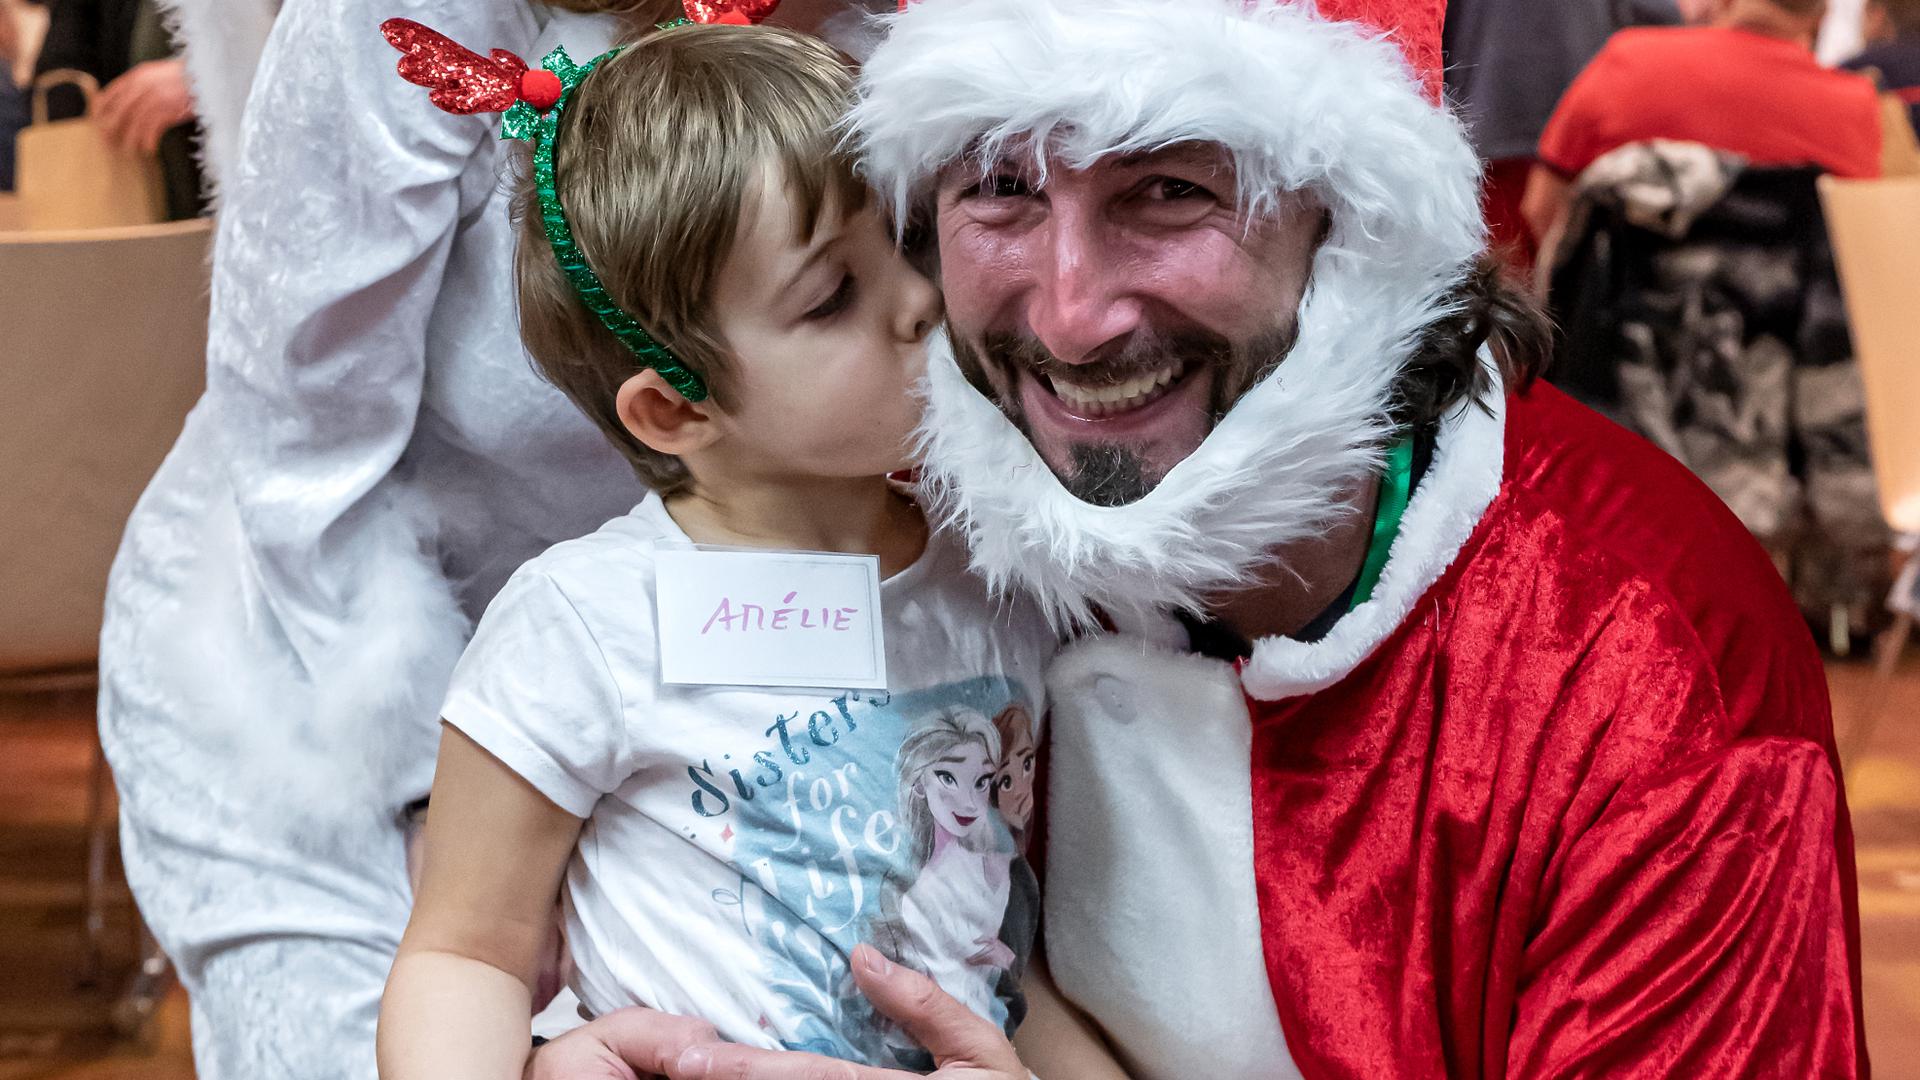 Une image vaut mille mots : la petite Amélie a remercié "Kleeschen" et son ange de Noël pour leurs superbes cadeaux en leur faisant un bisou.